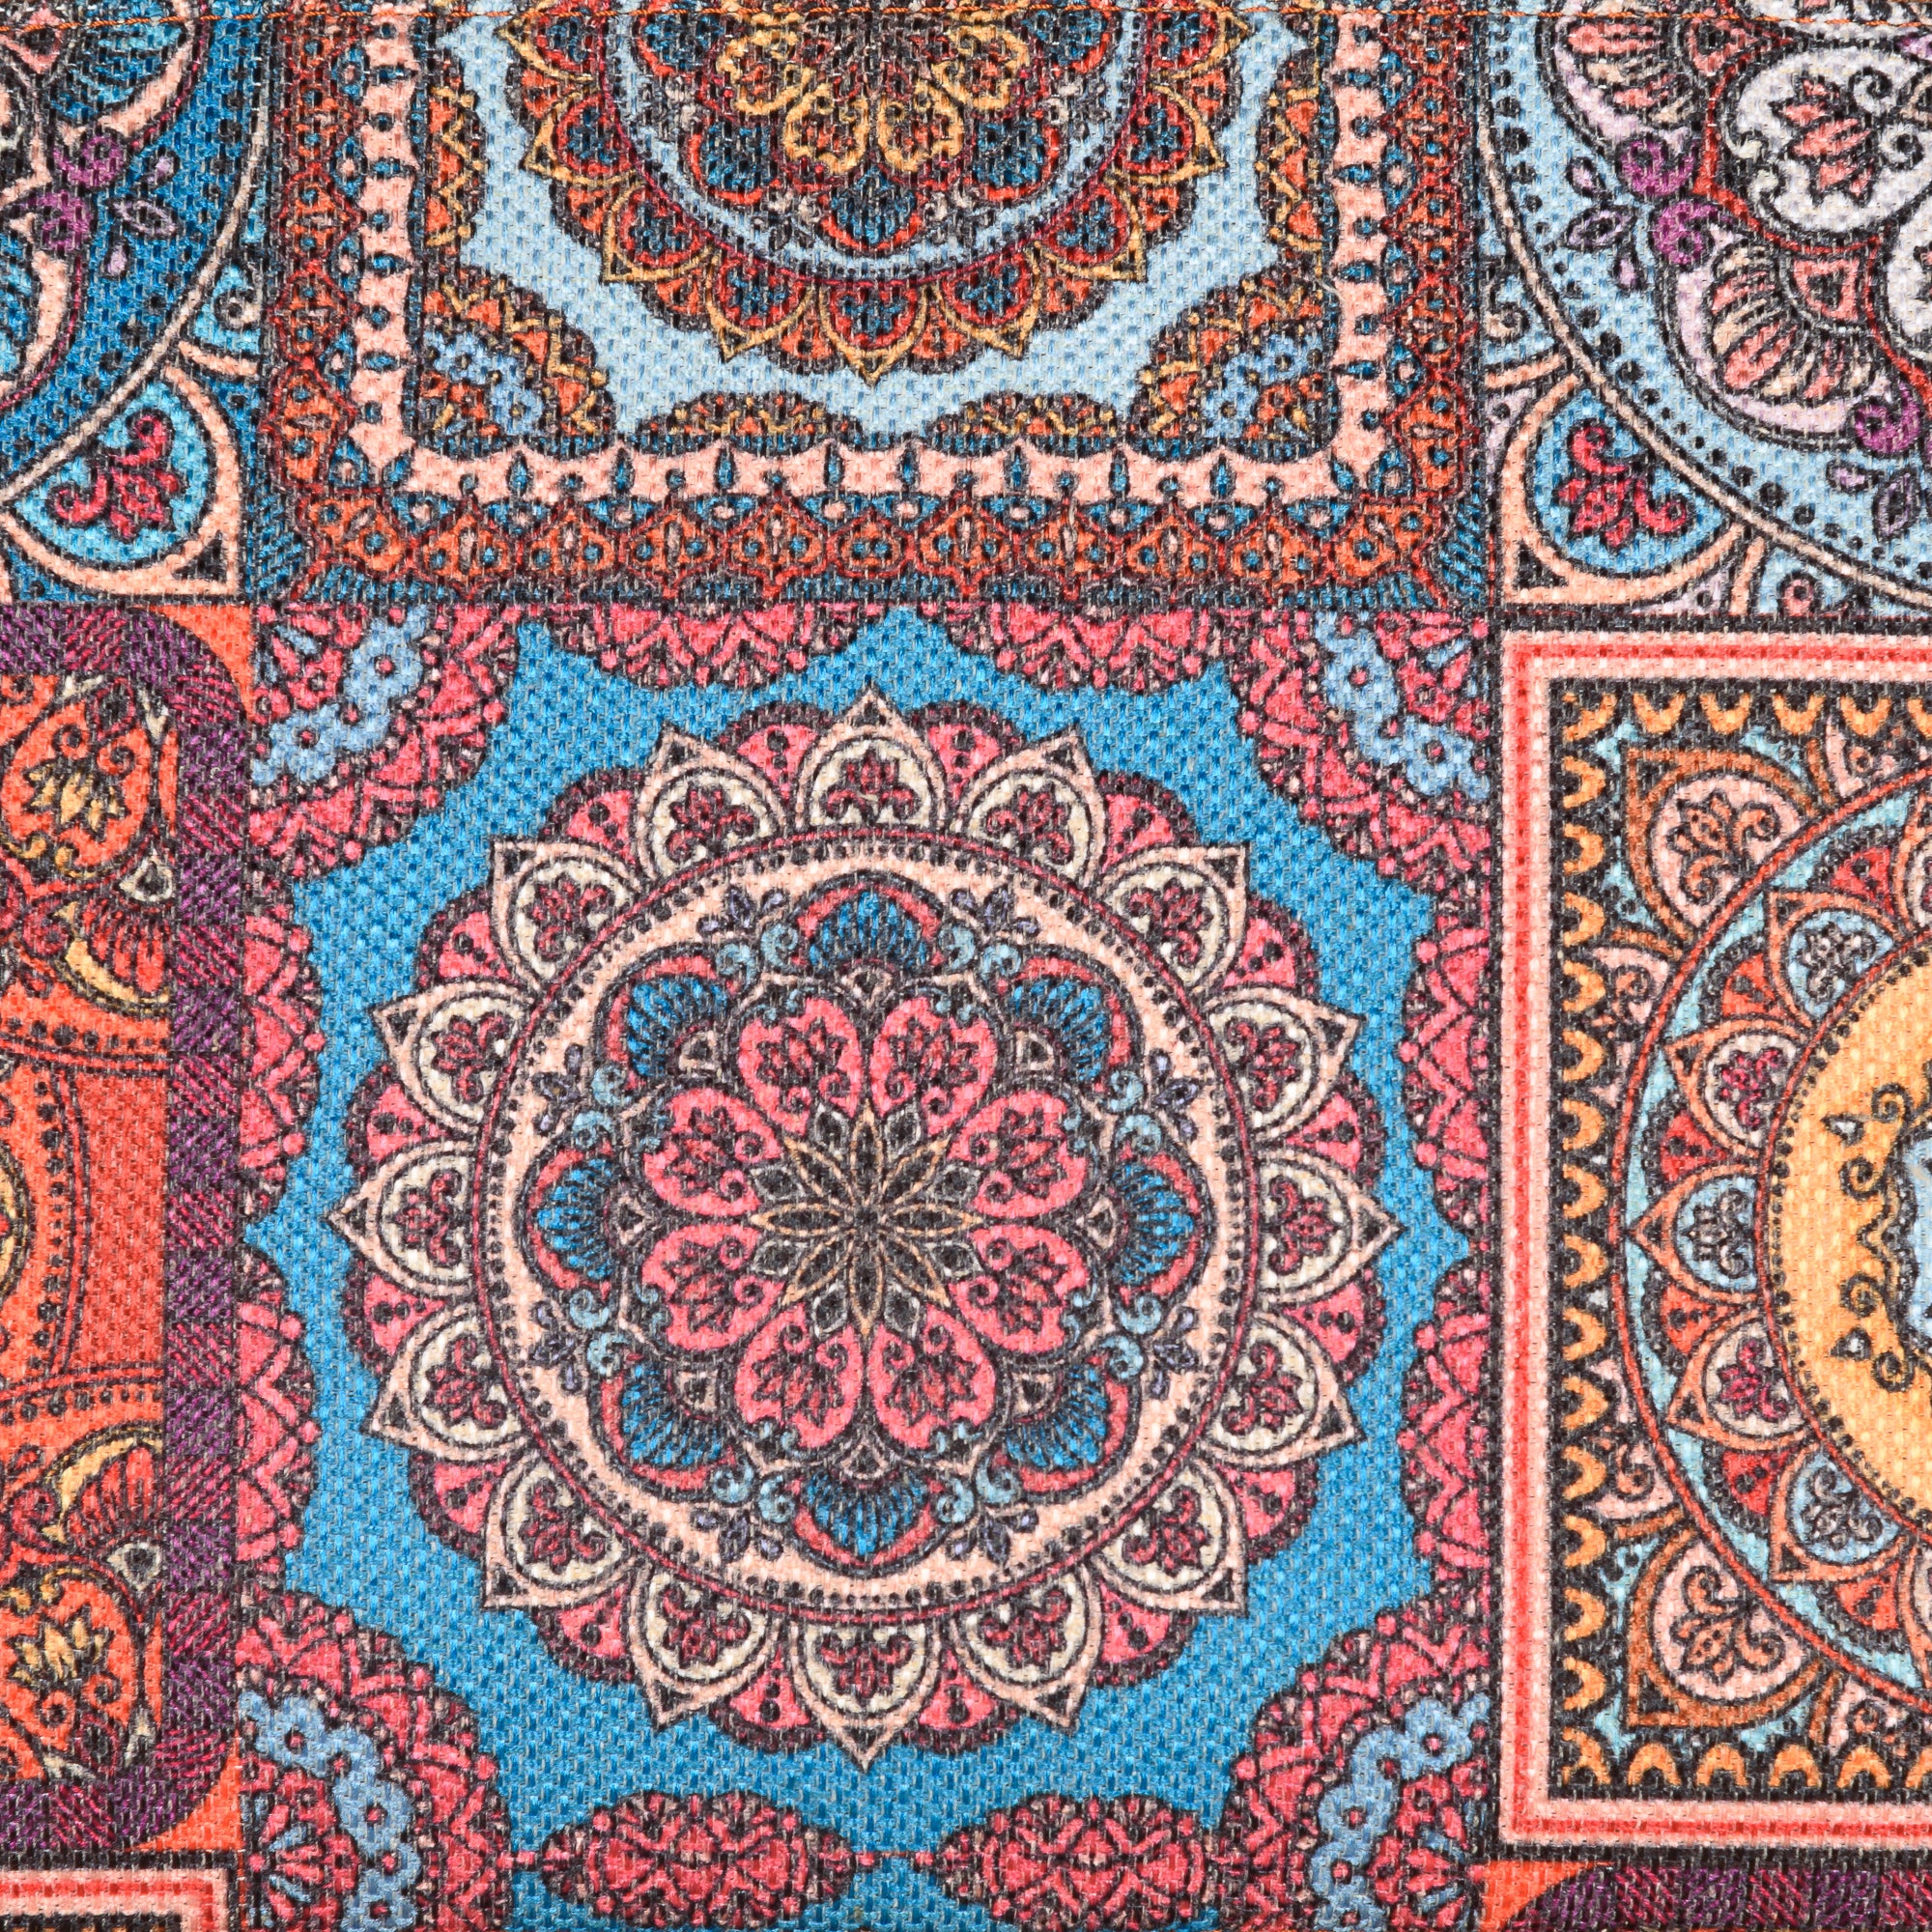 Multicolor Mandala Print Hobo Bag